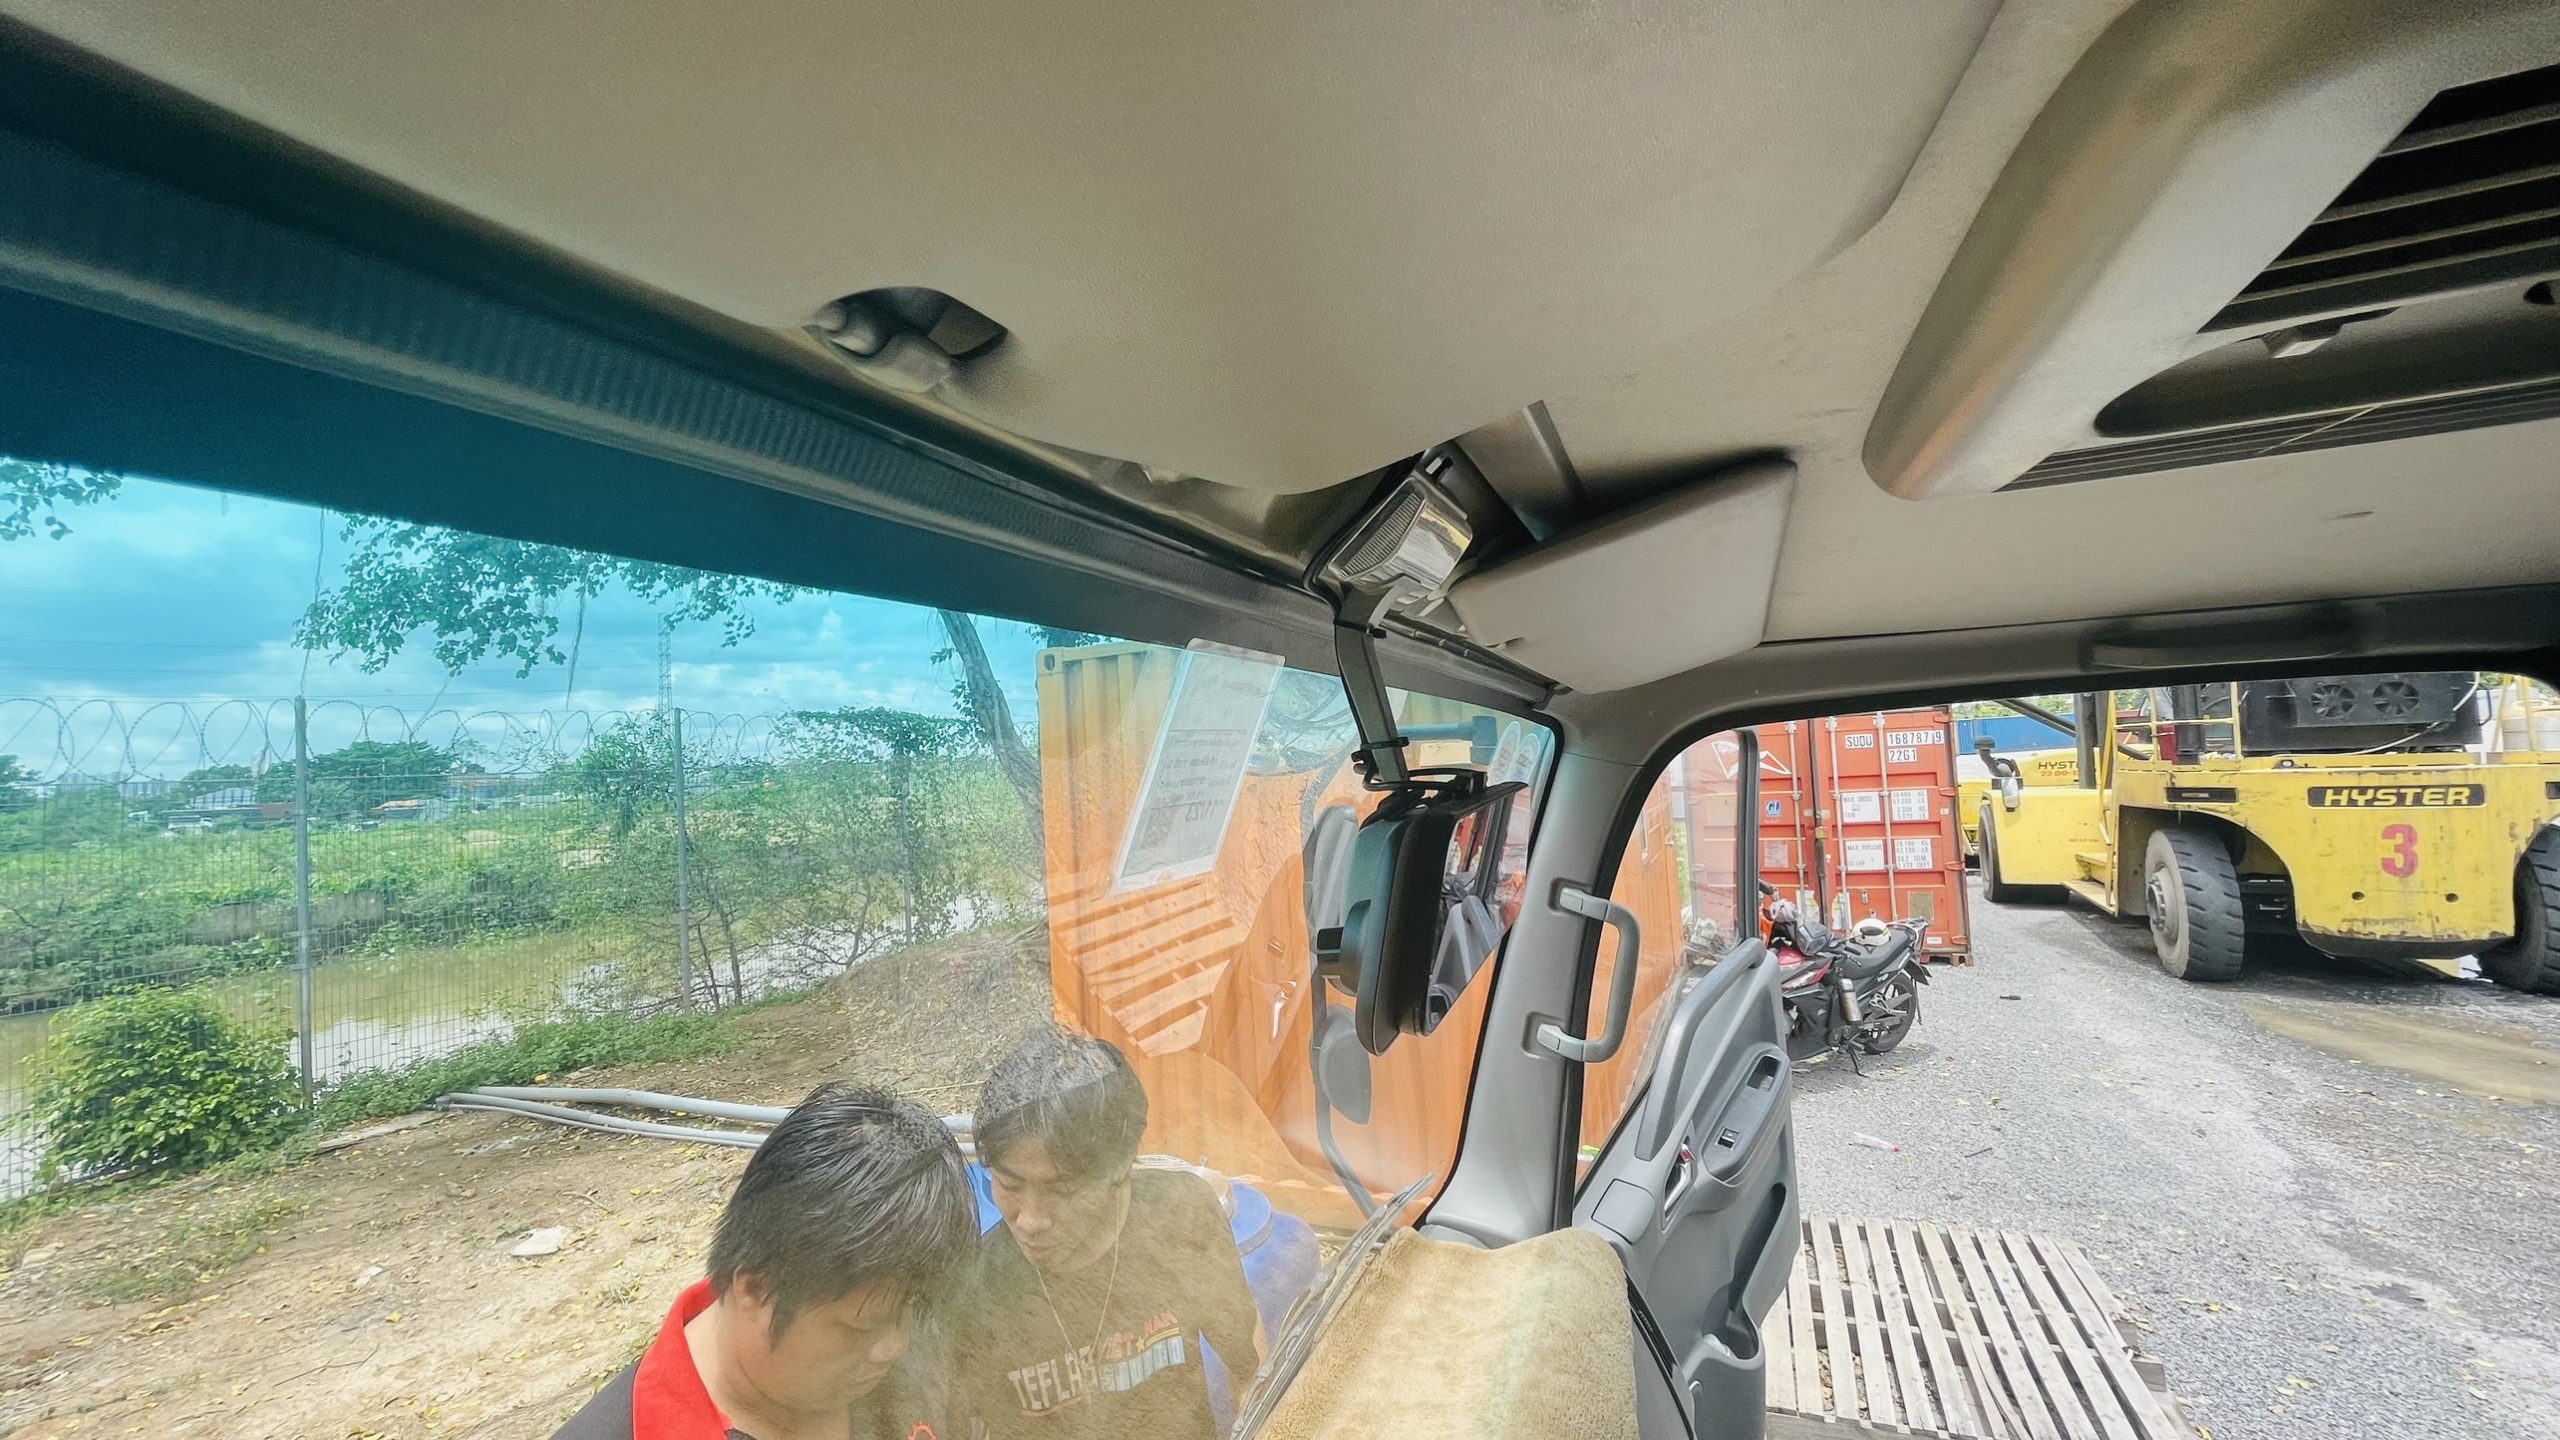 Camera hành trình gương xe tải (4)